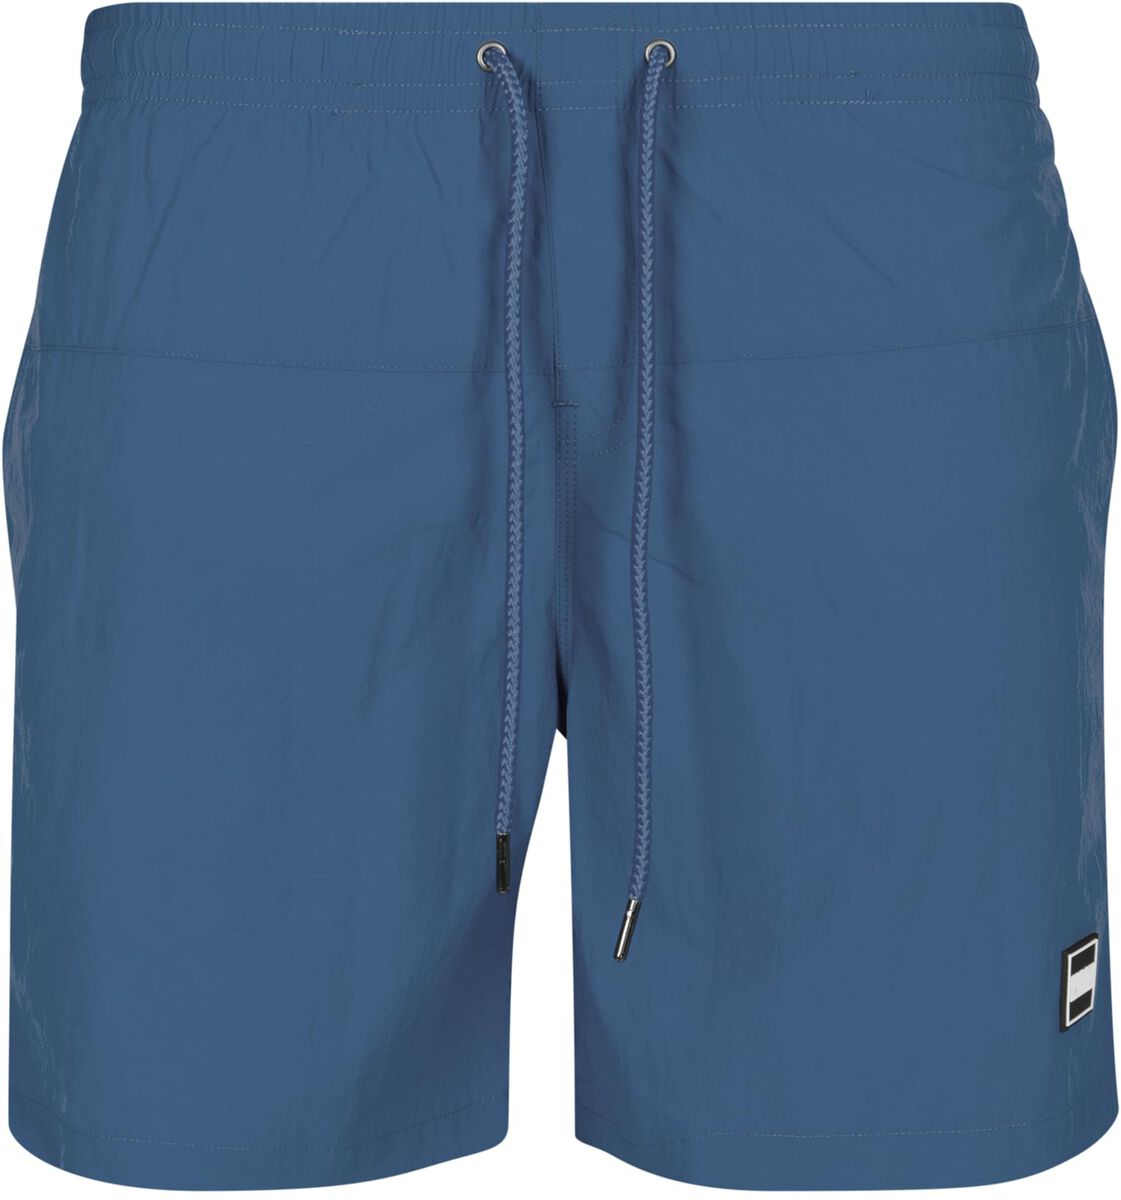 Urban Classics Badeshort - Block Swim Shorts - S bis 4XL - für Männer - Größe XL - blau